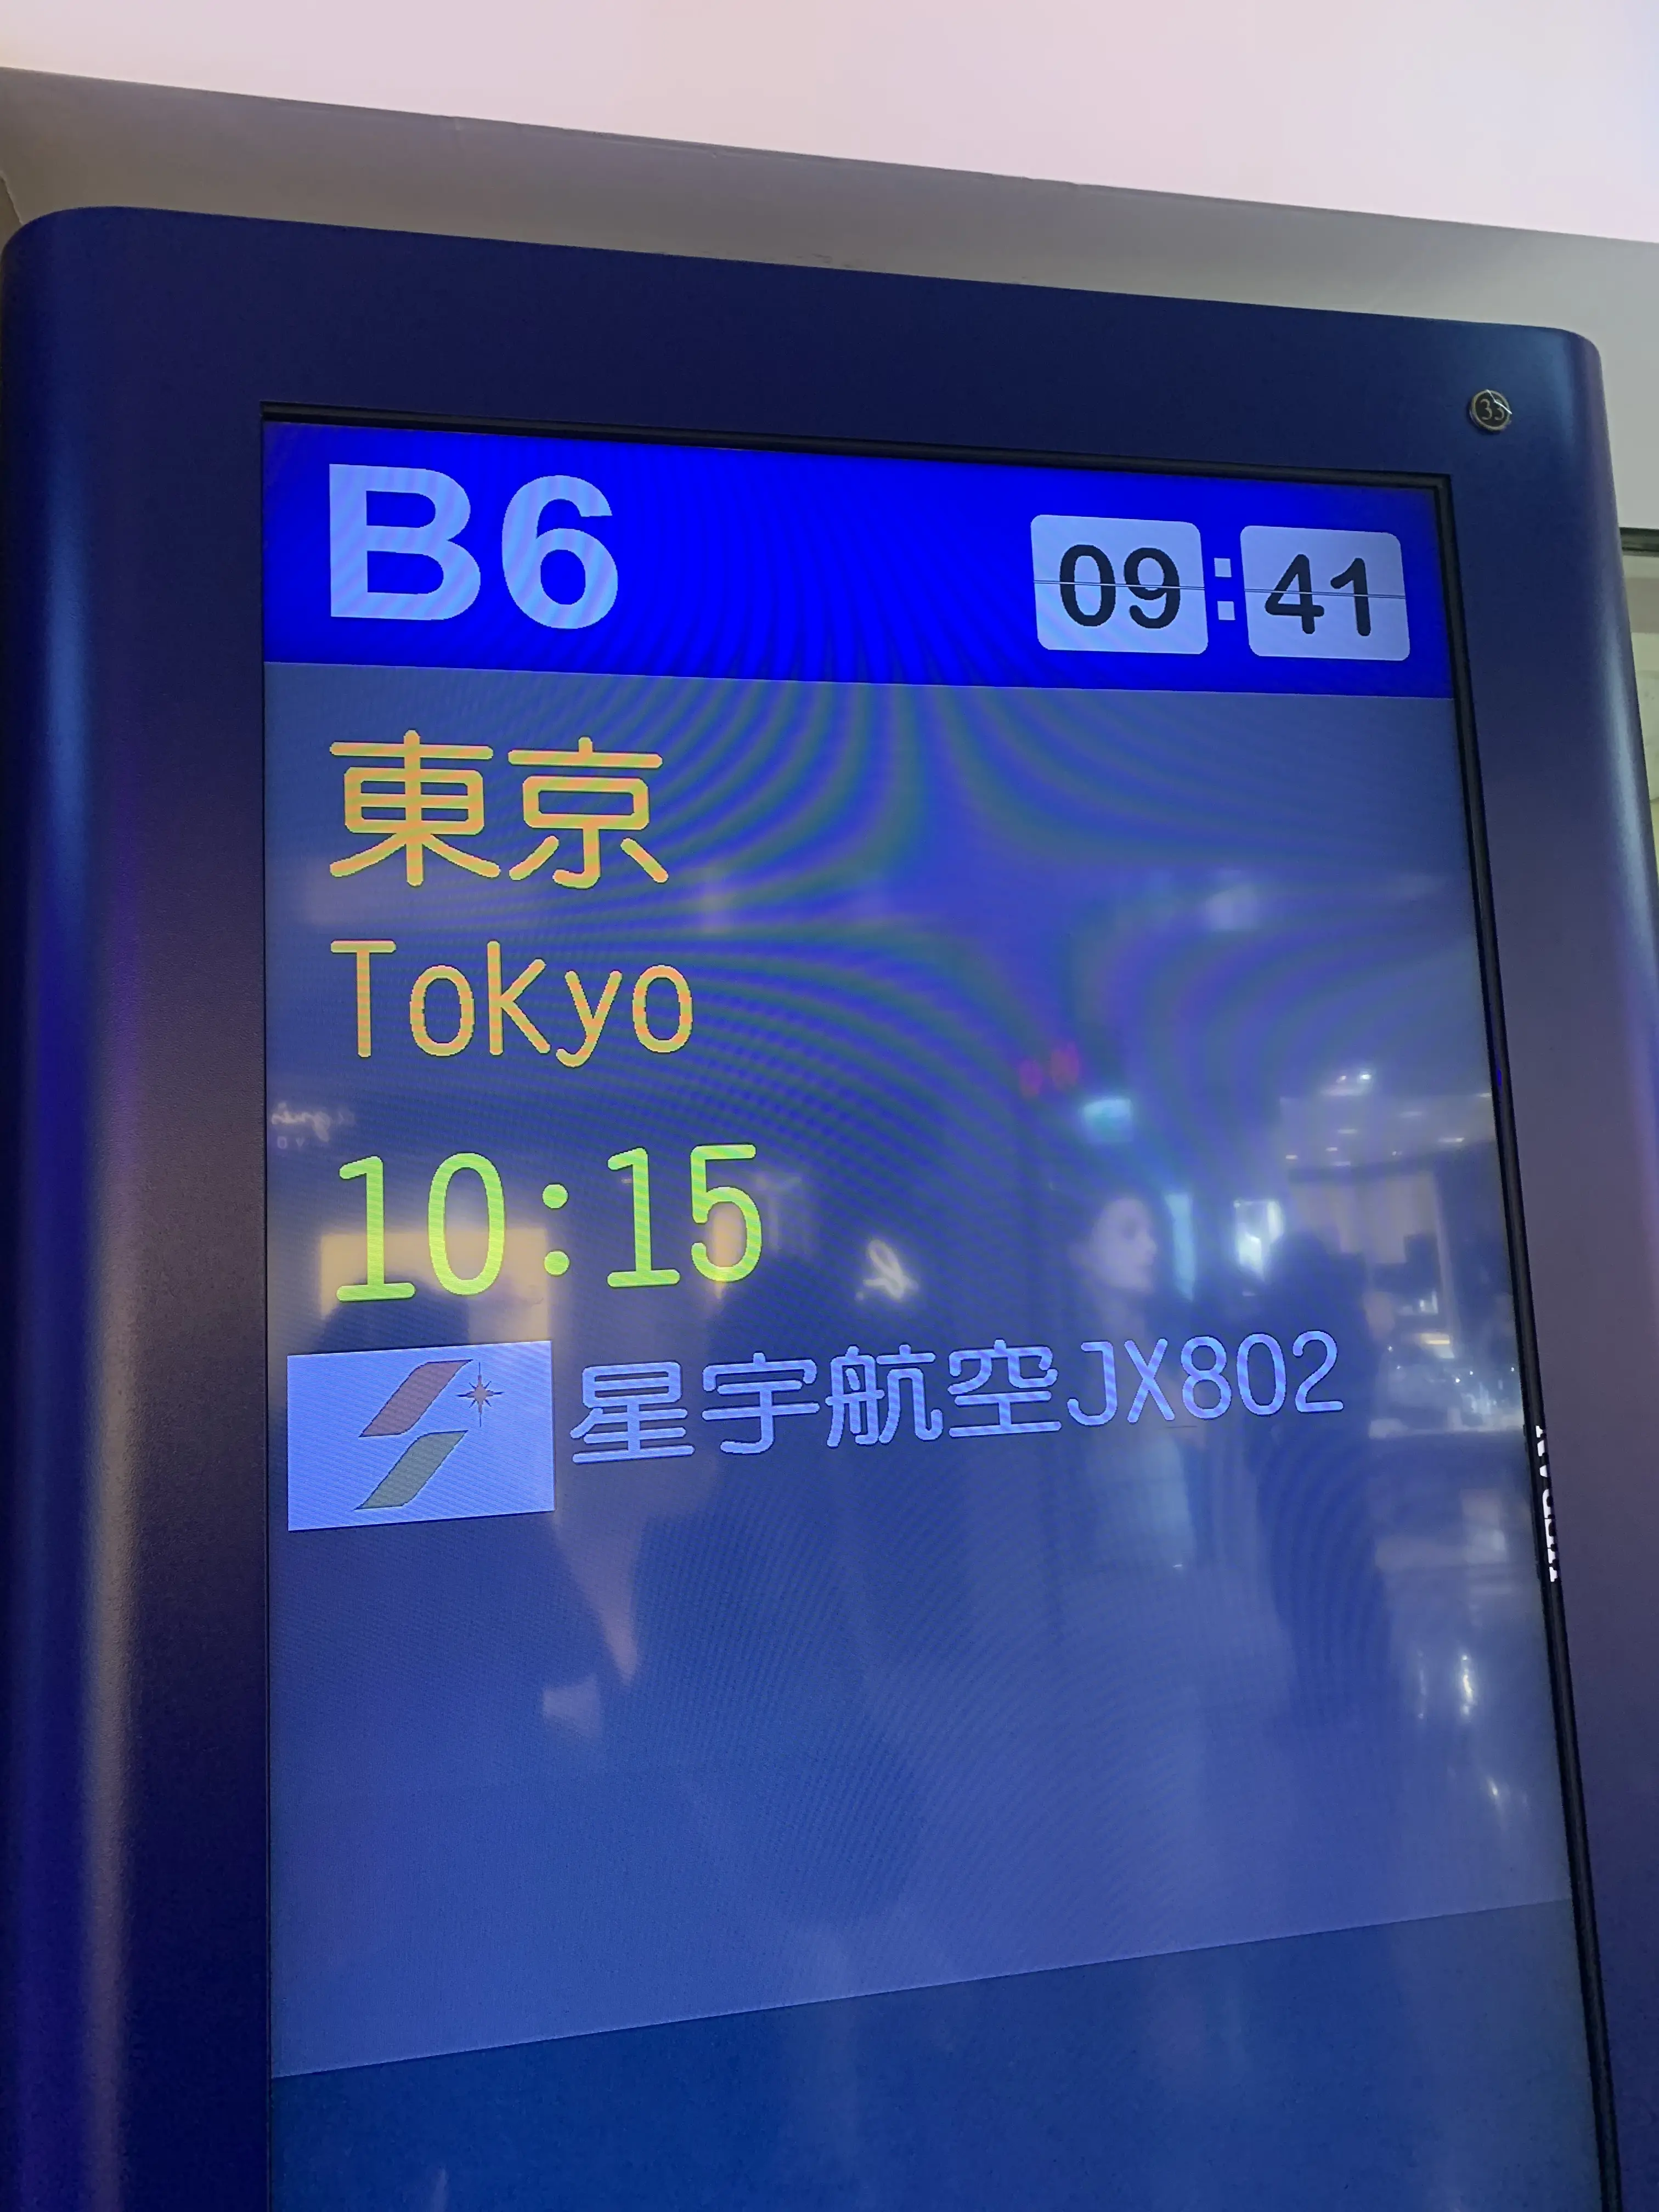 スターラックス航空802便、東京行きの看板